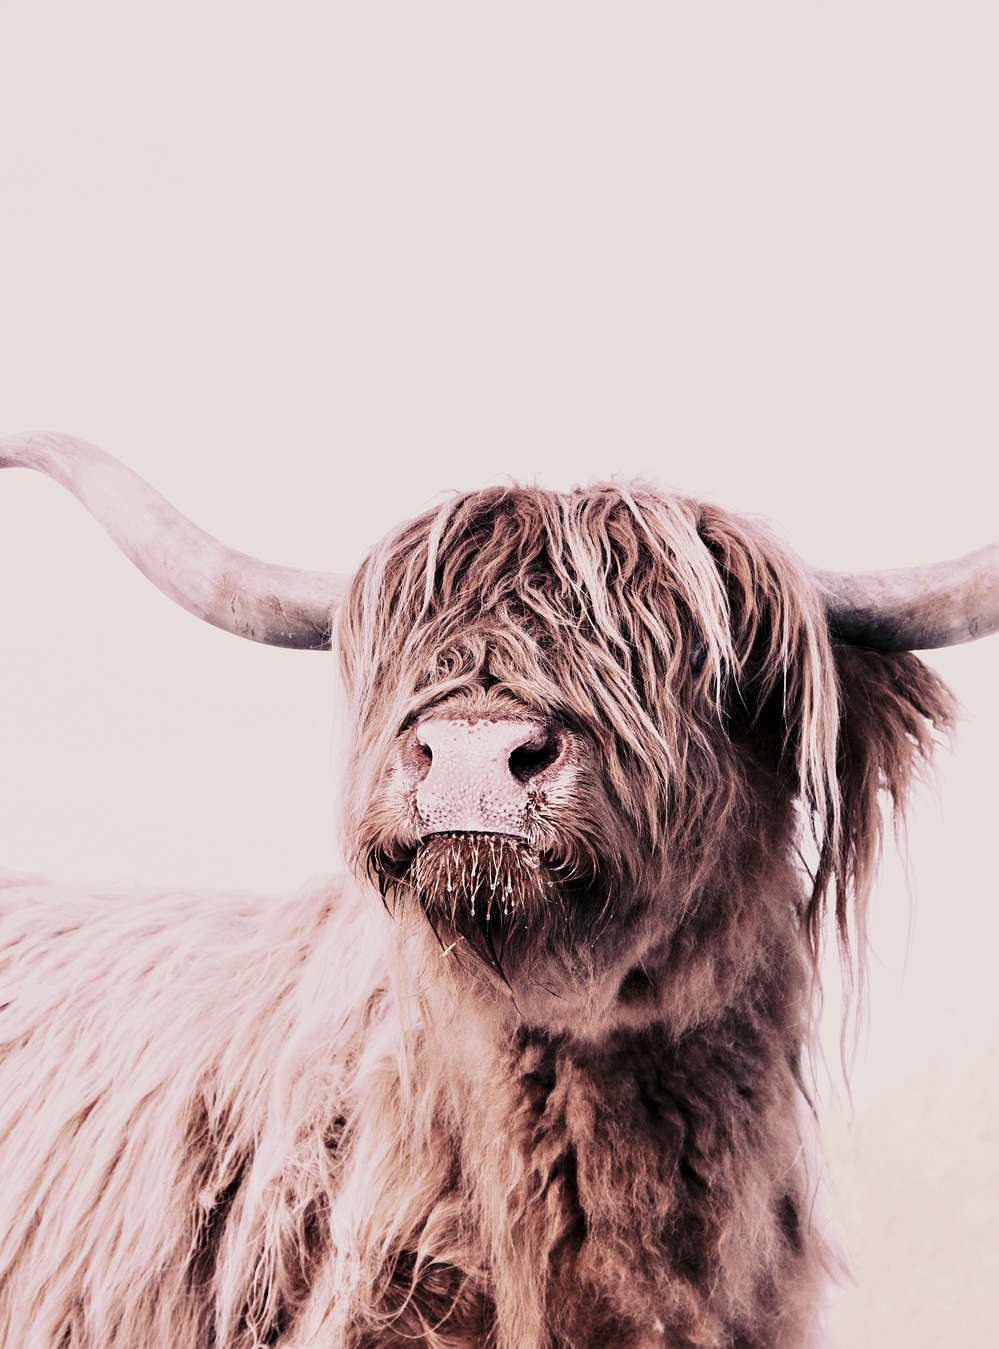             Carta da parati con ritratto di bestiame delle Highlands in stile seppia
        